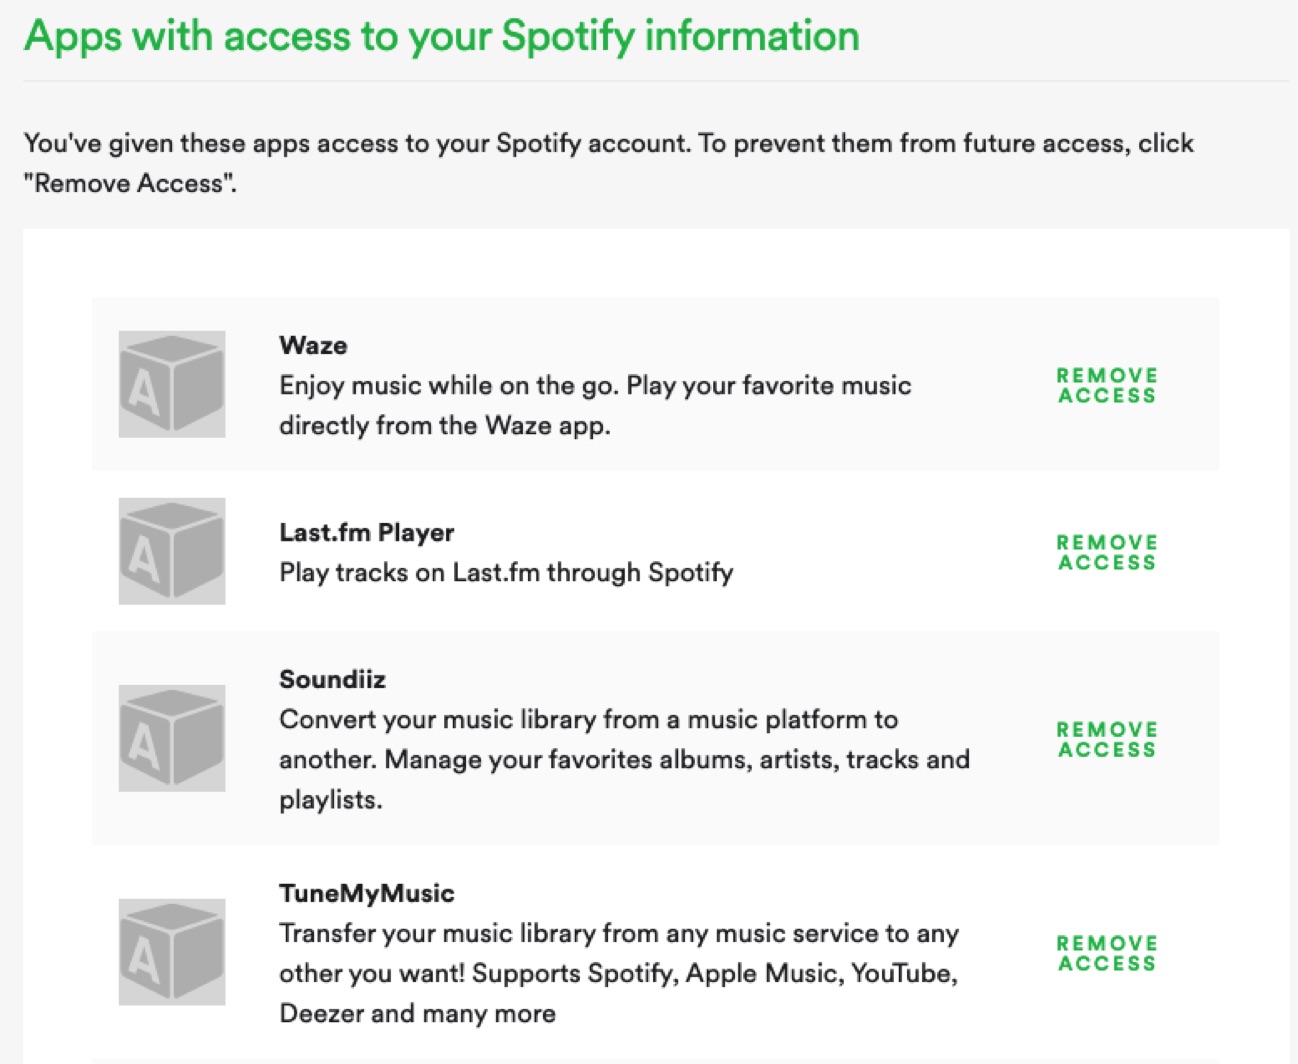 Spotify revoke access